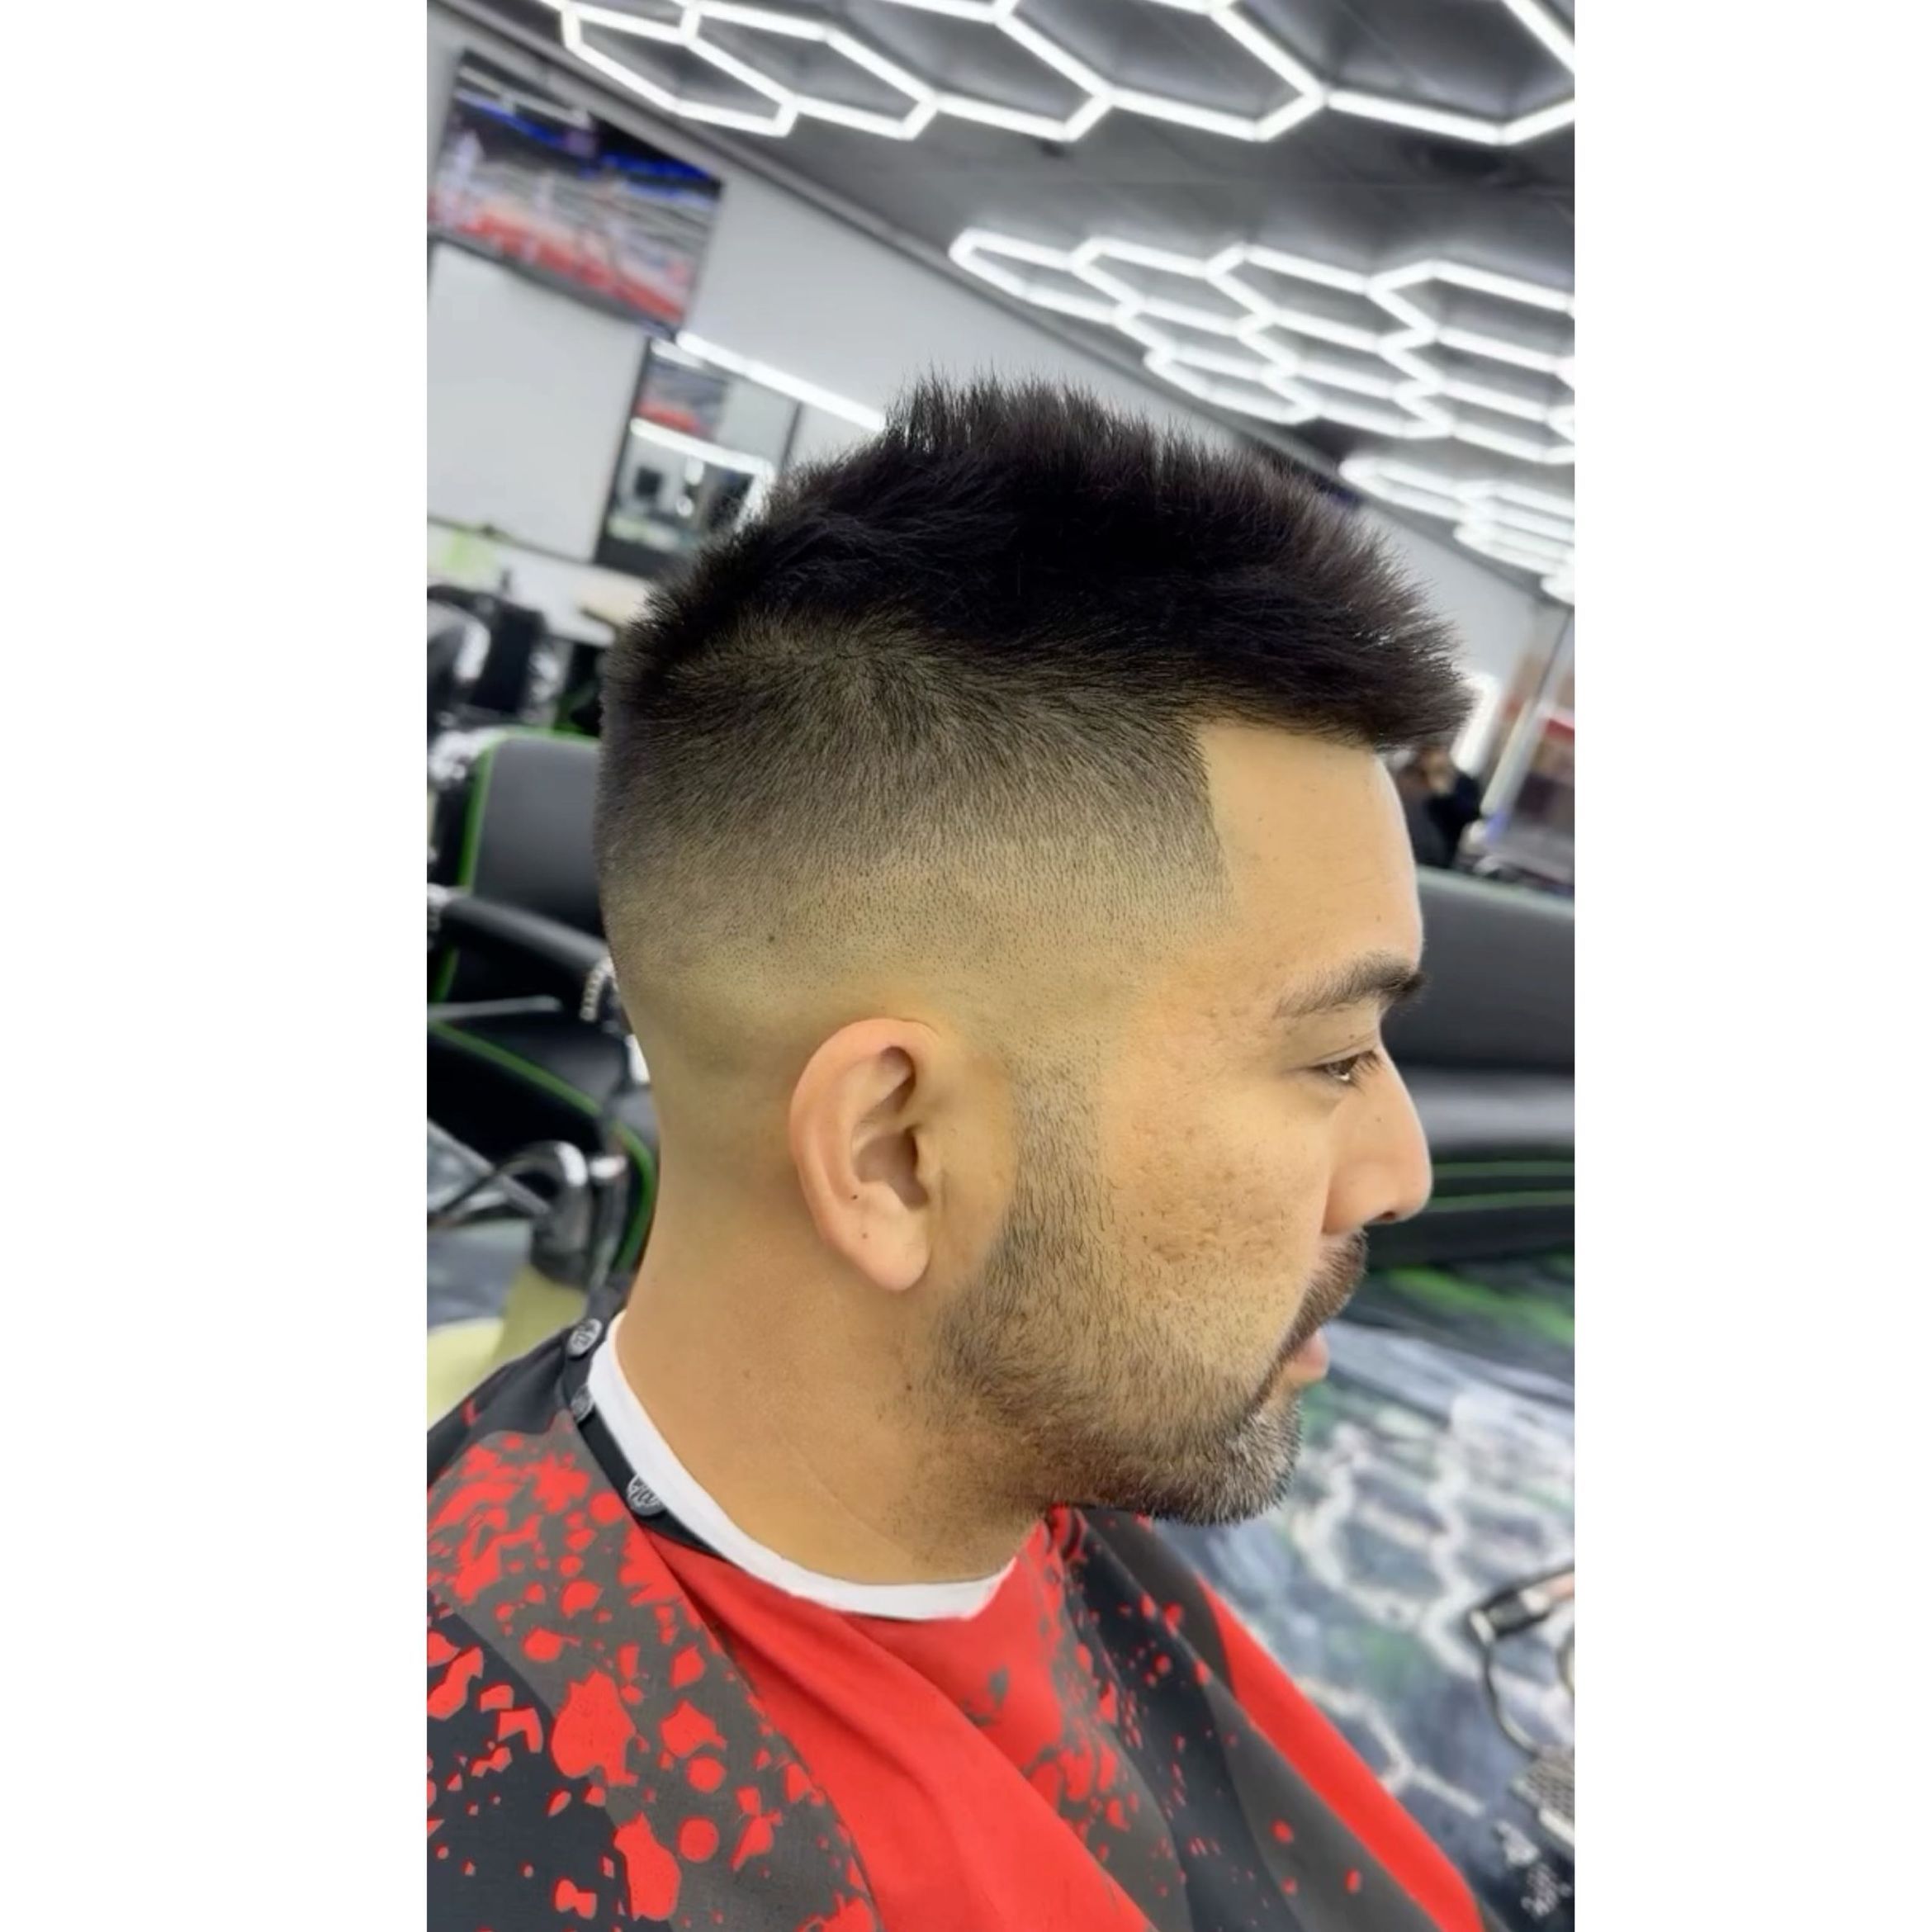 Deluxe haircut service 🔥 portfolio